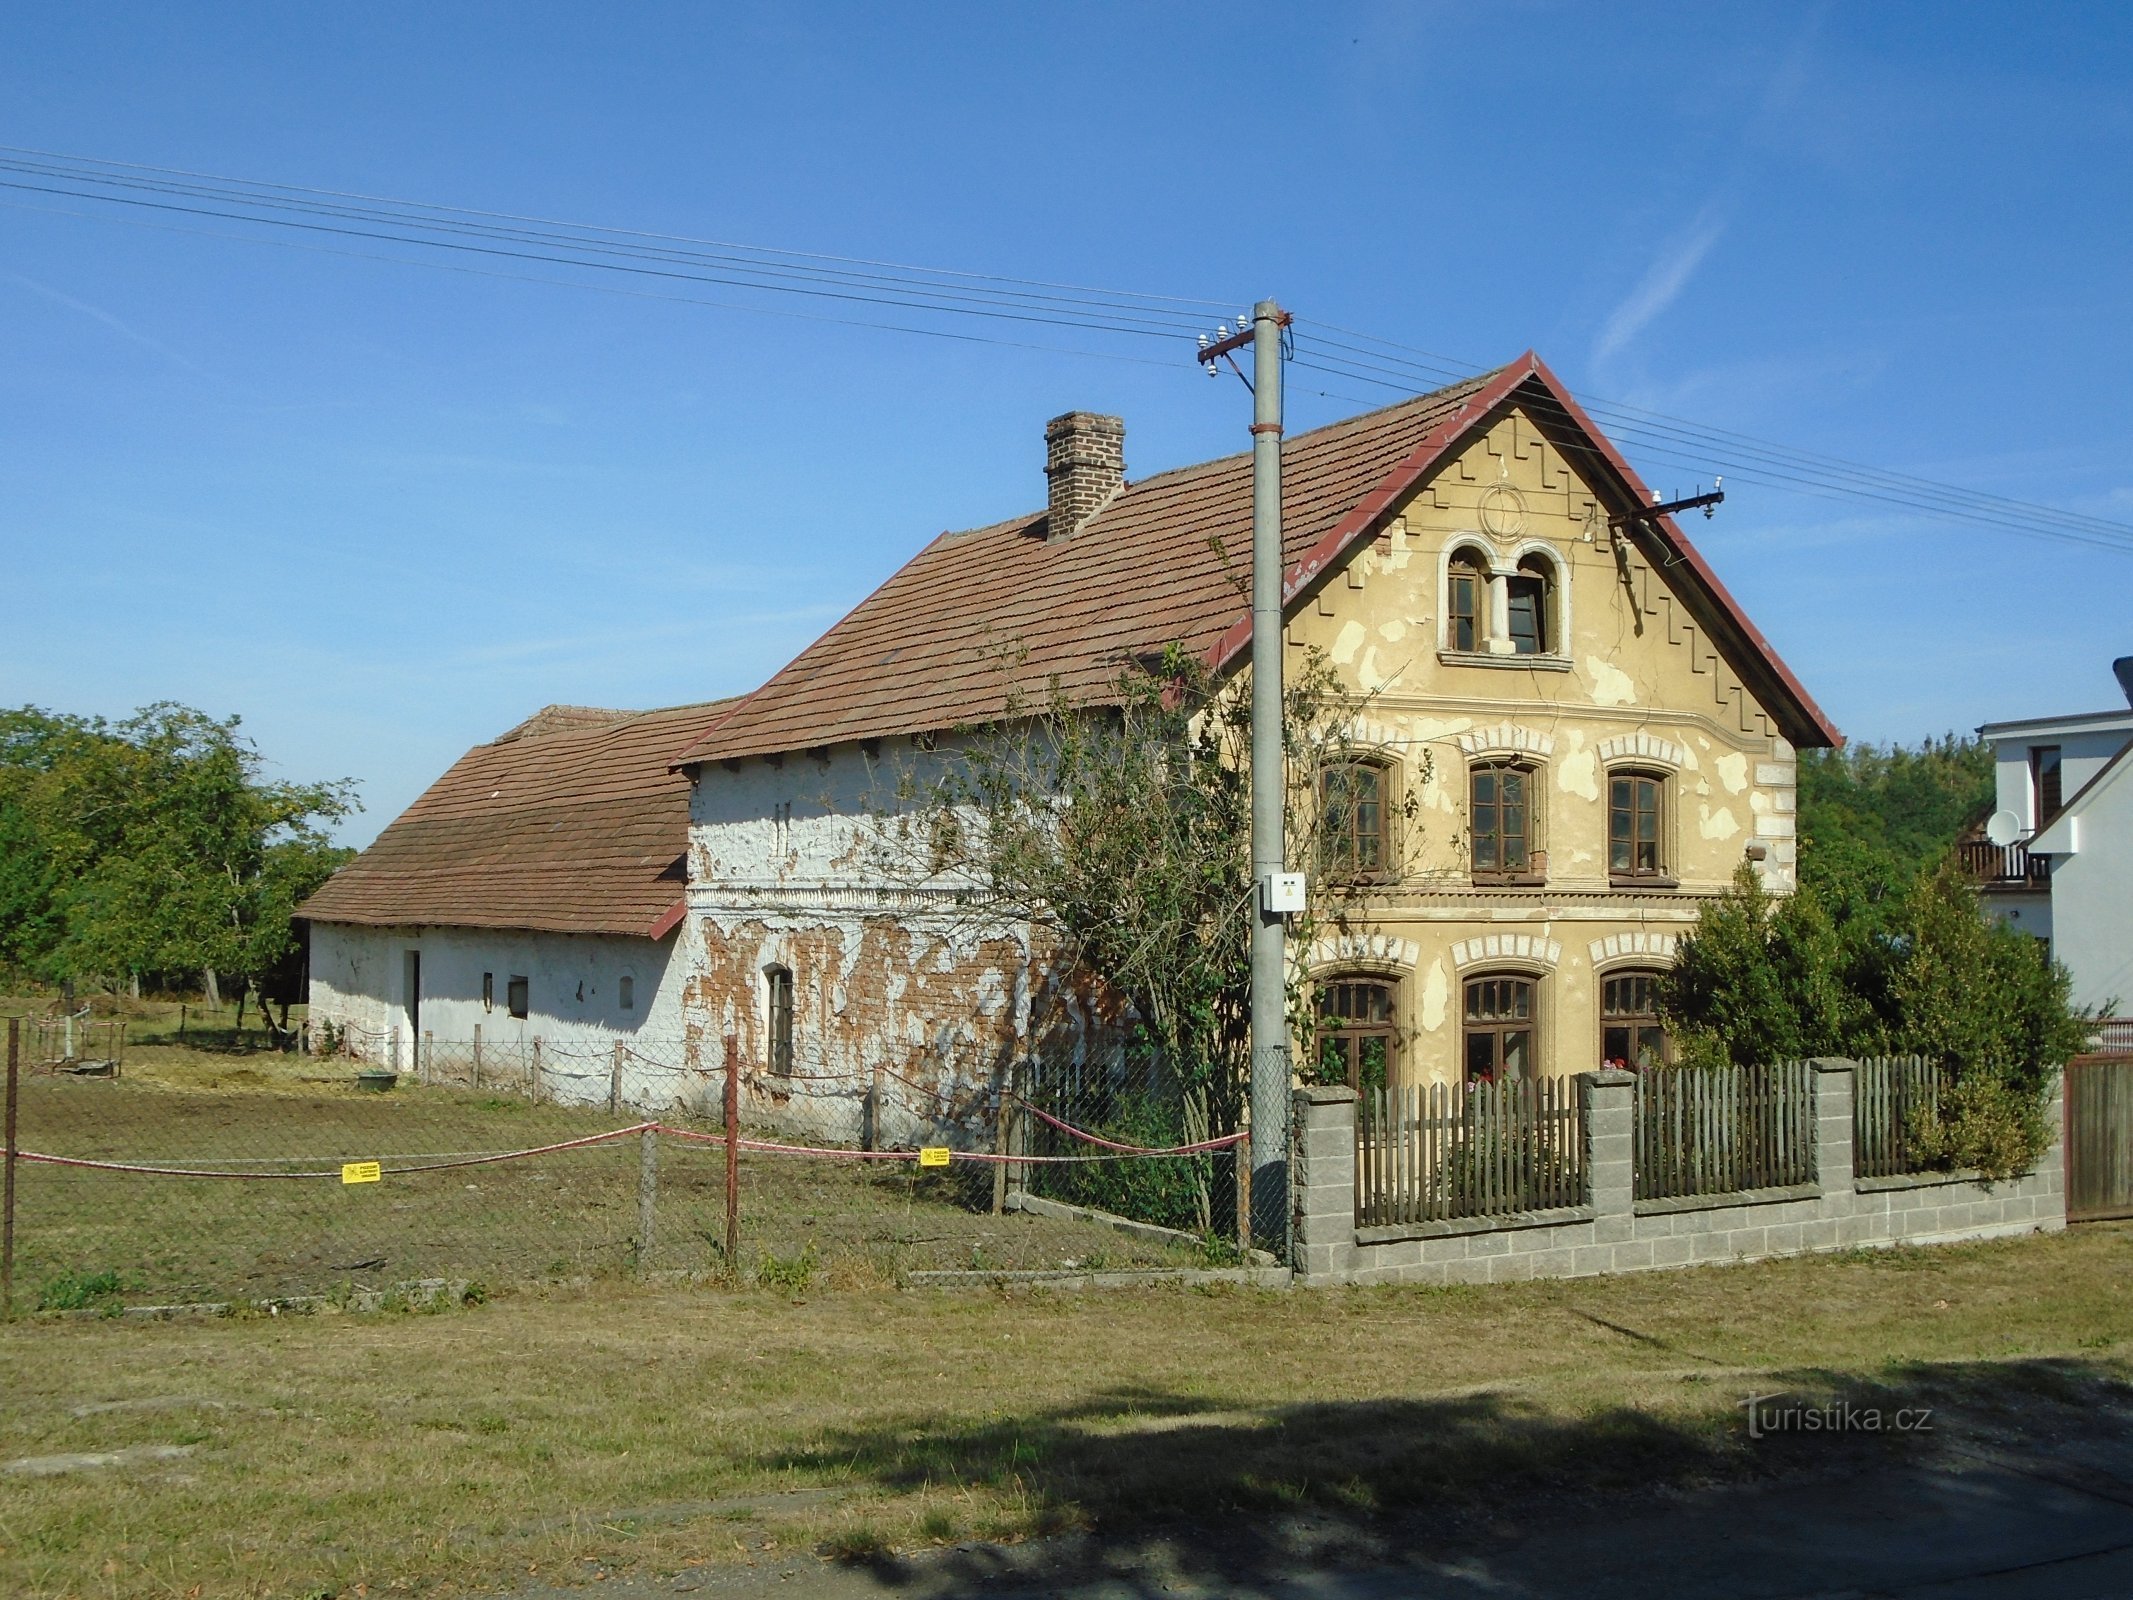 În spatele școlii nr. 4 (Vysoké Chvojno)